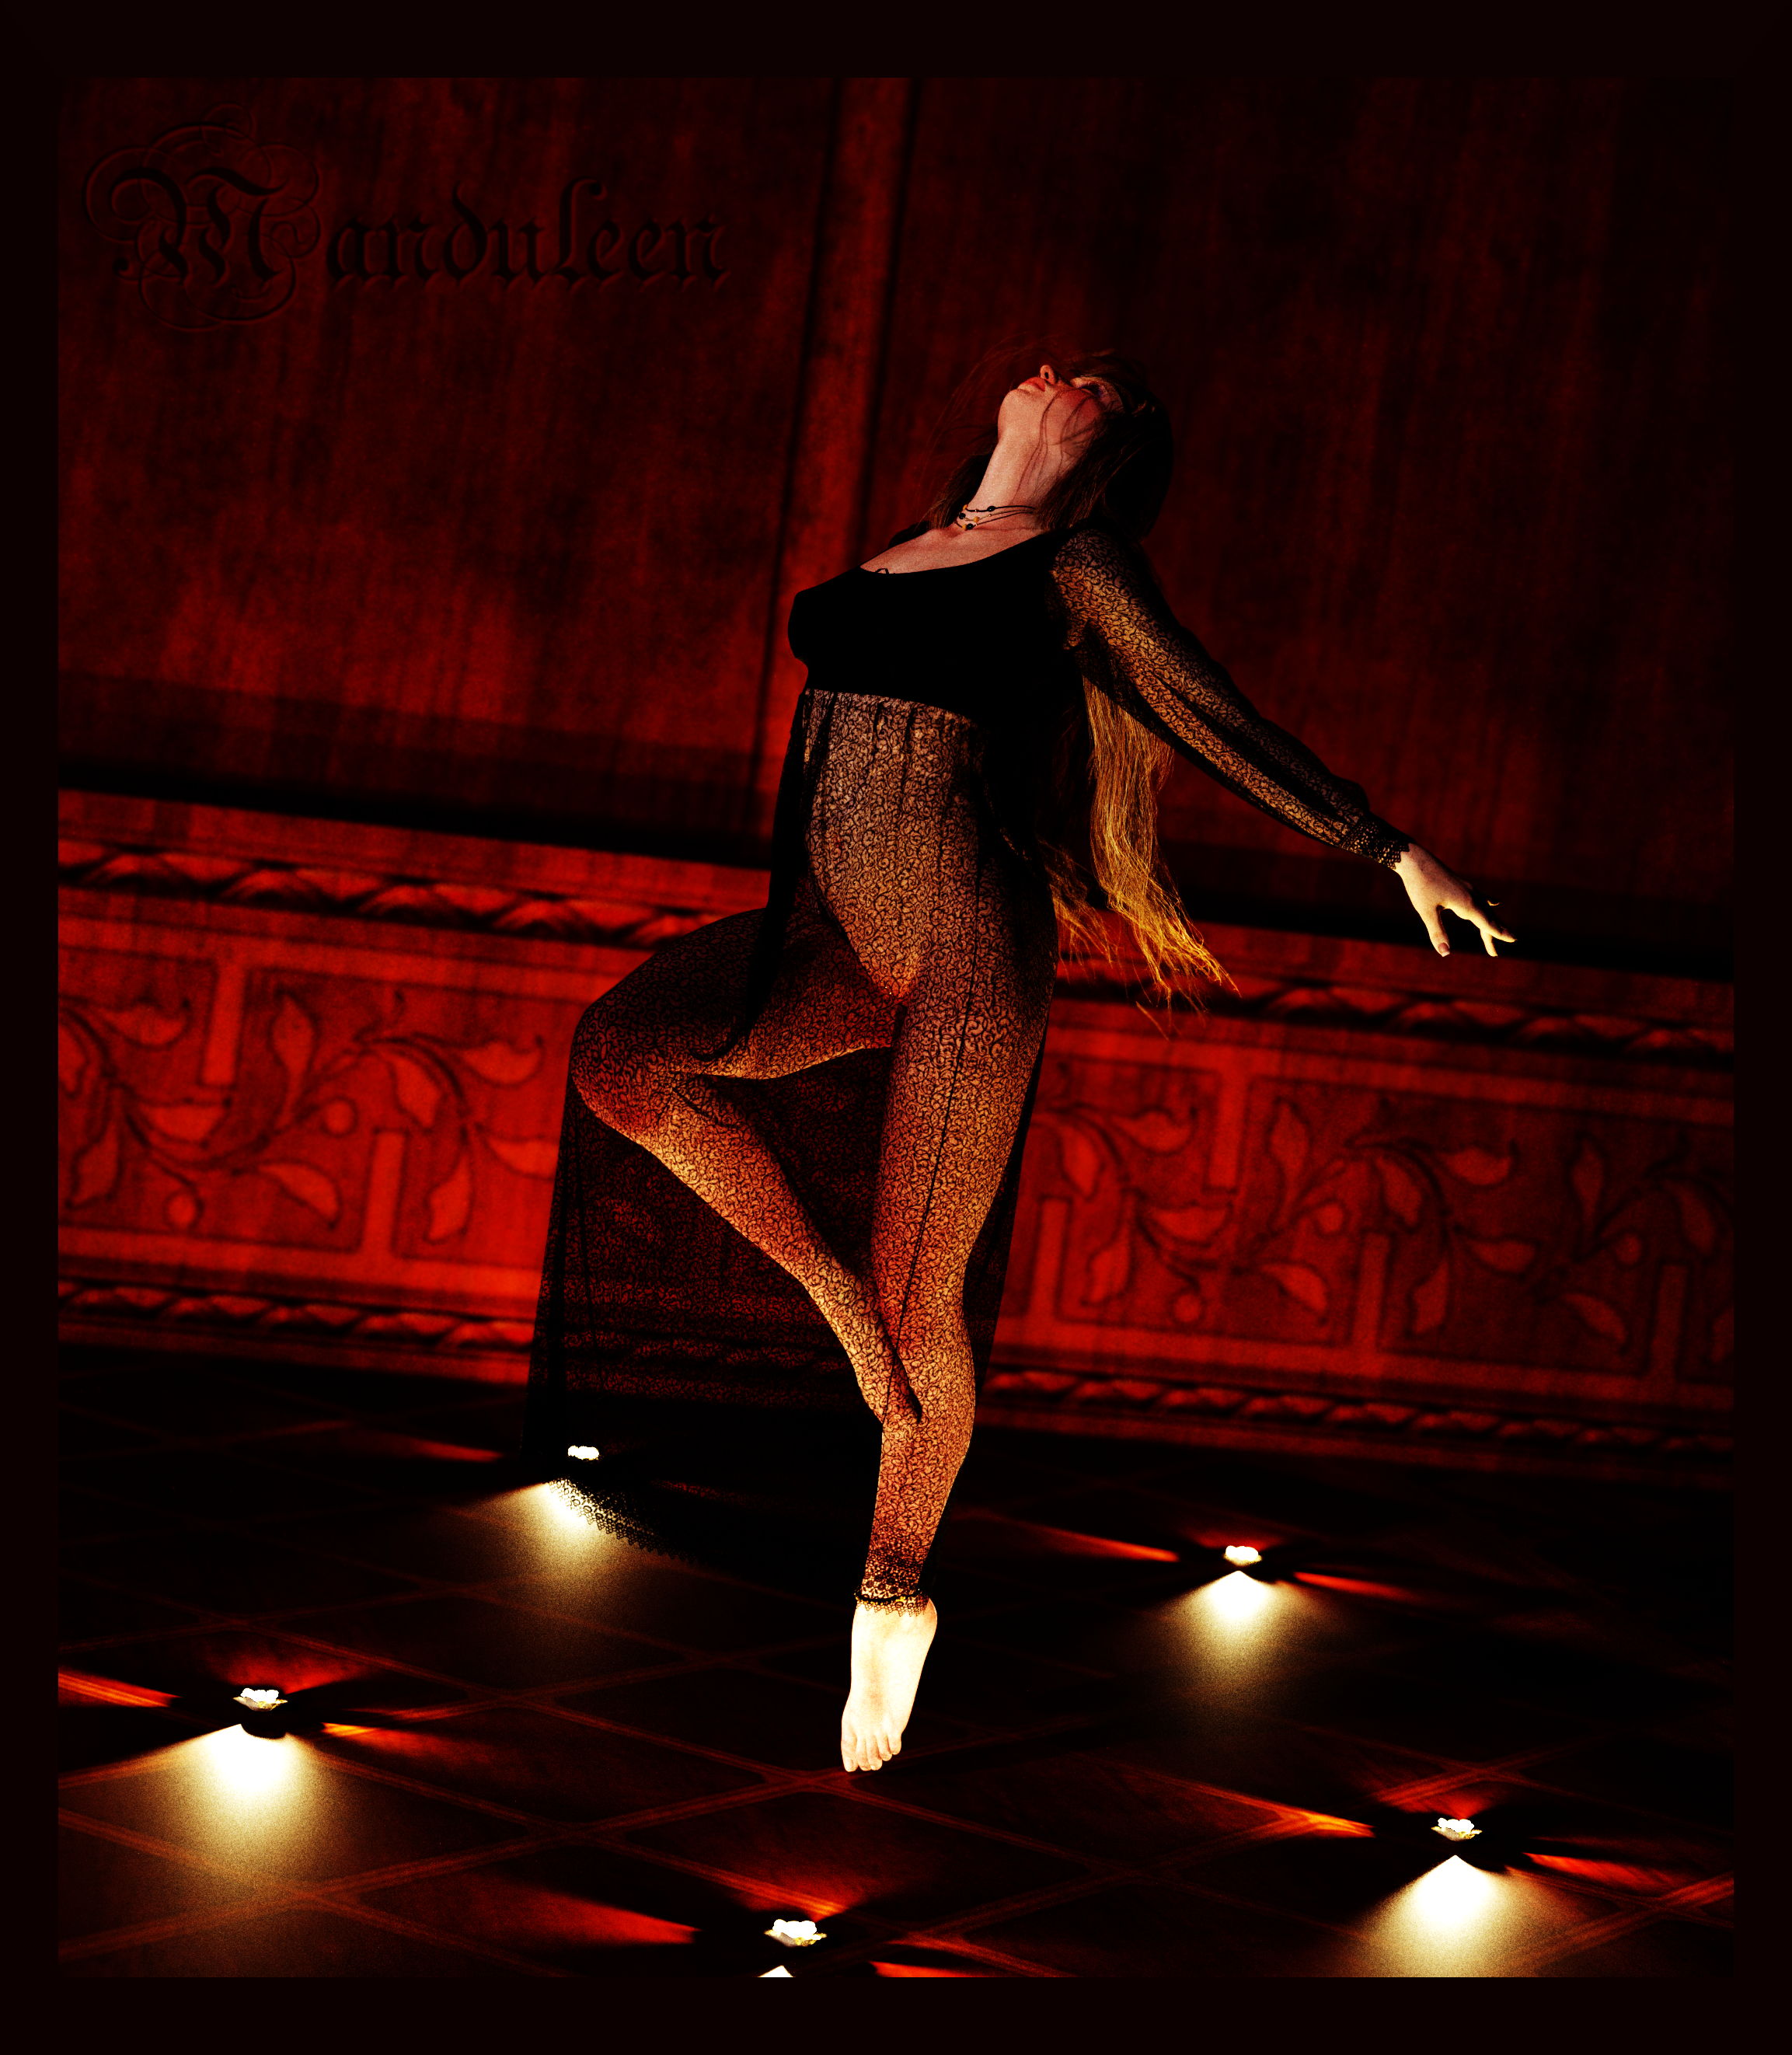 http://fc08.deviantart.net/fs70/f/2013/131/4/b/danse_final_by_manduleen-d64xdhb.png